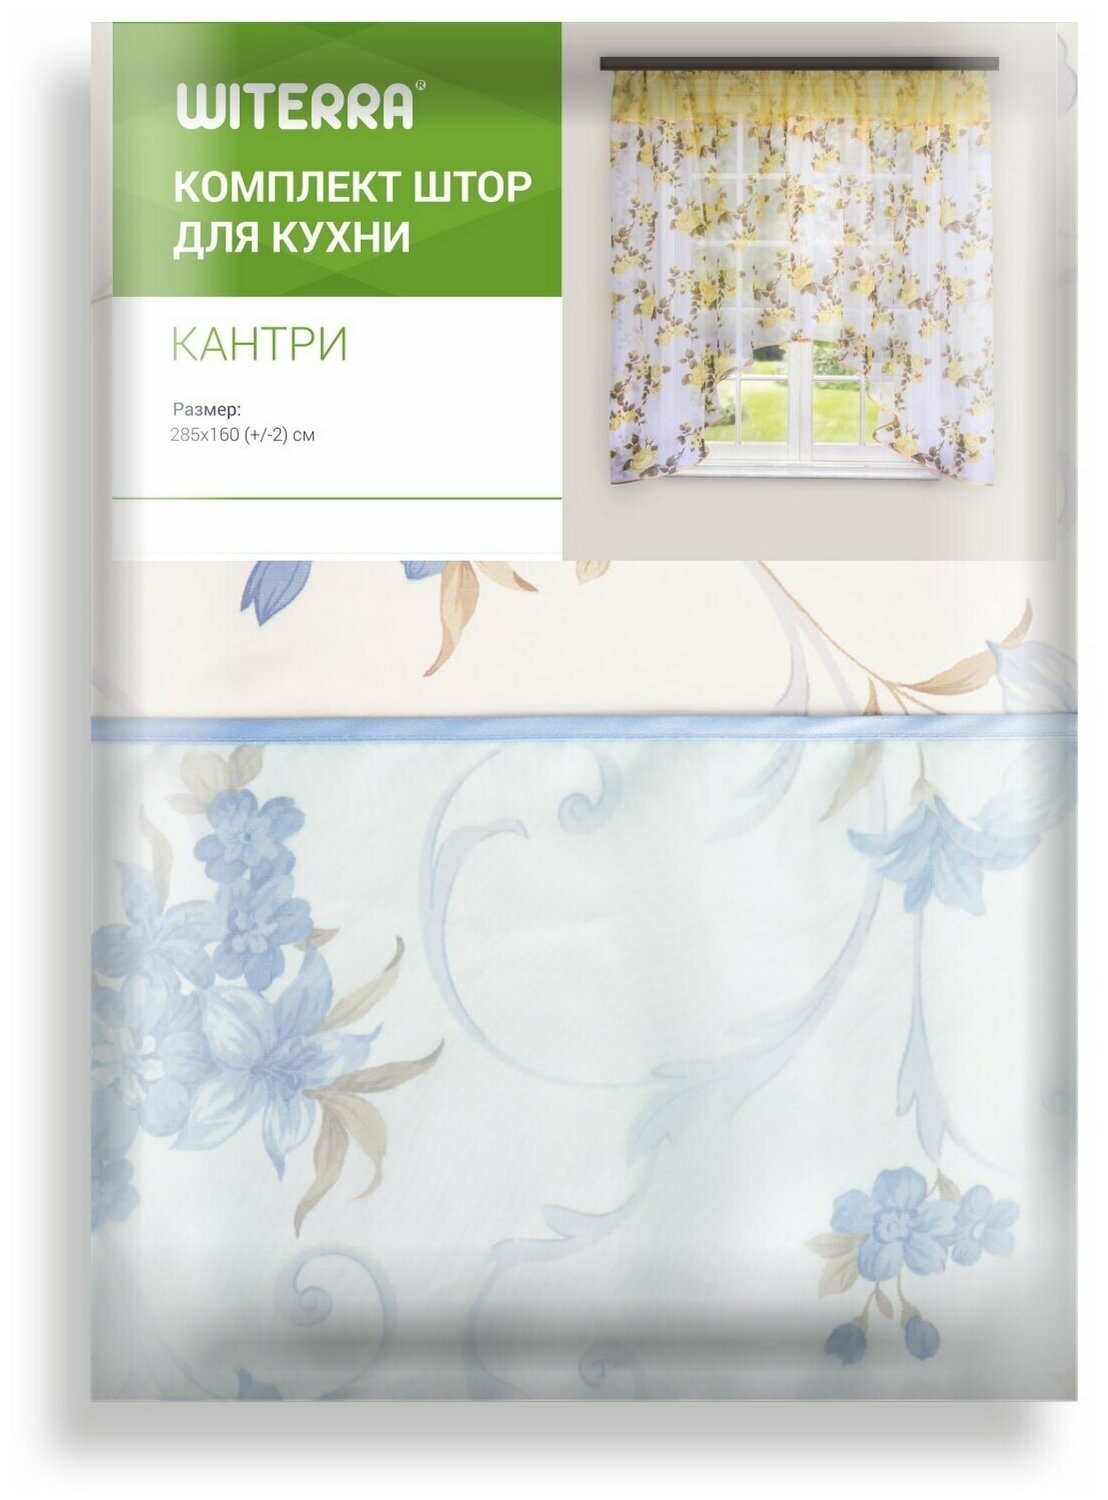 Комплект штор Witerra для кухни Кантри 285*160 голубой -1шт - фотография № 15